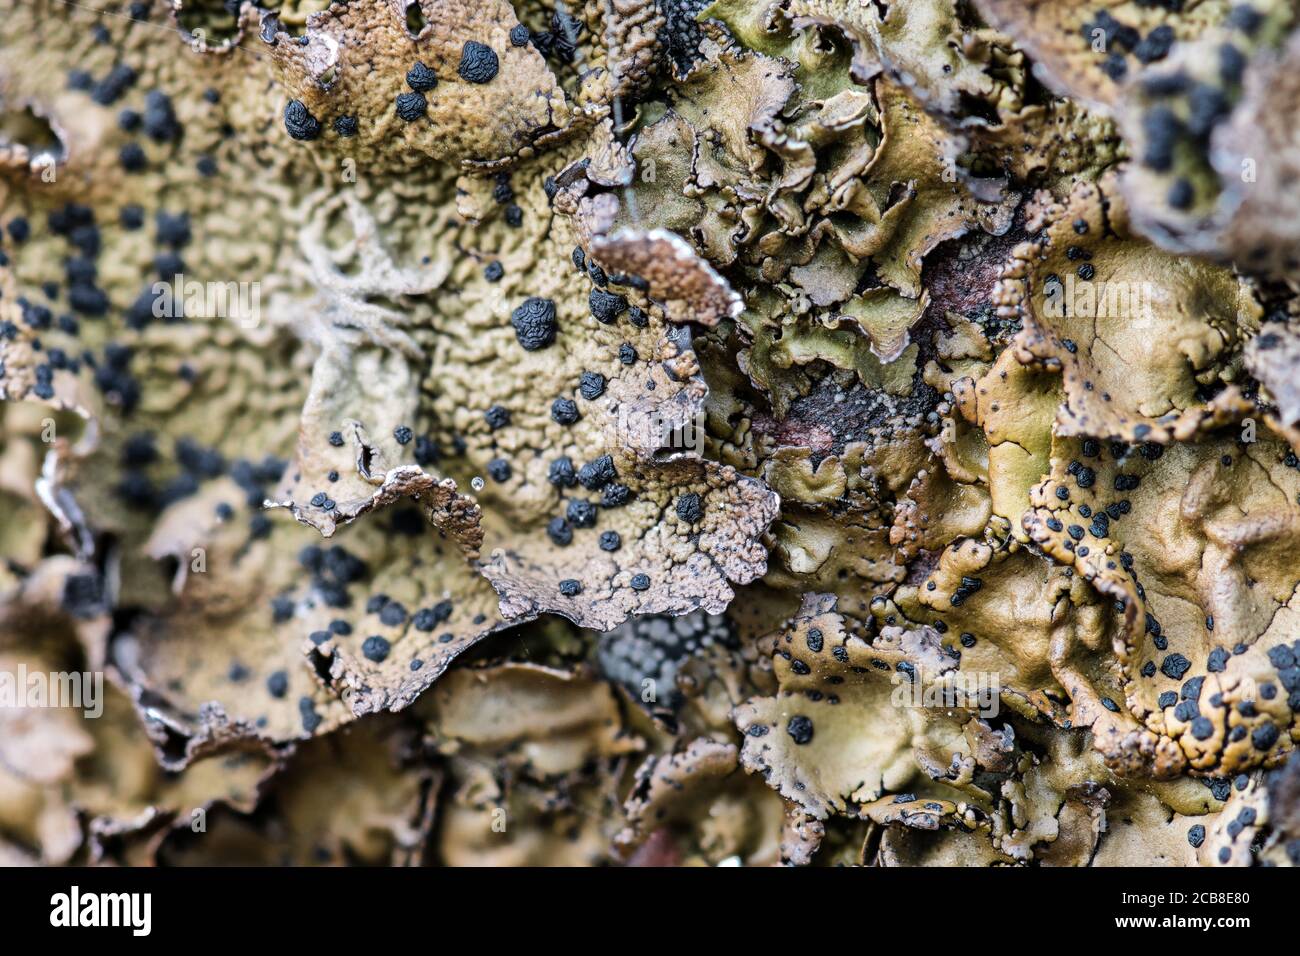 Rock Tripe Lichen (Umbilicaria torrefacta) Stock Photo